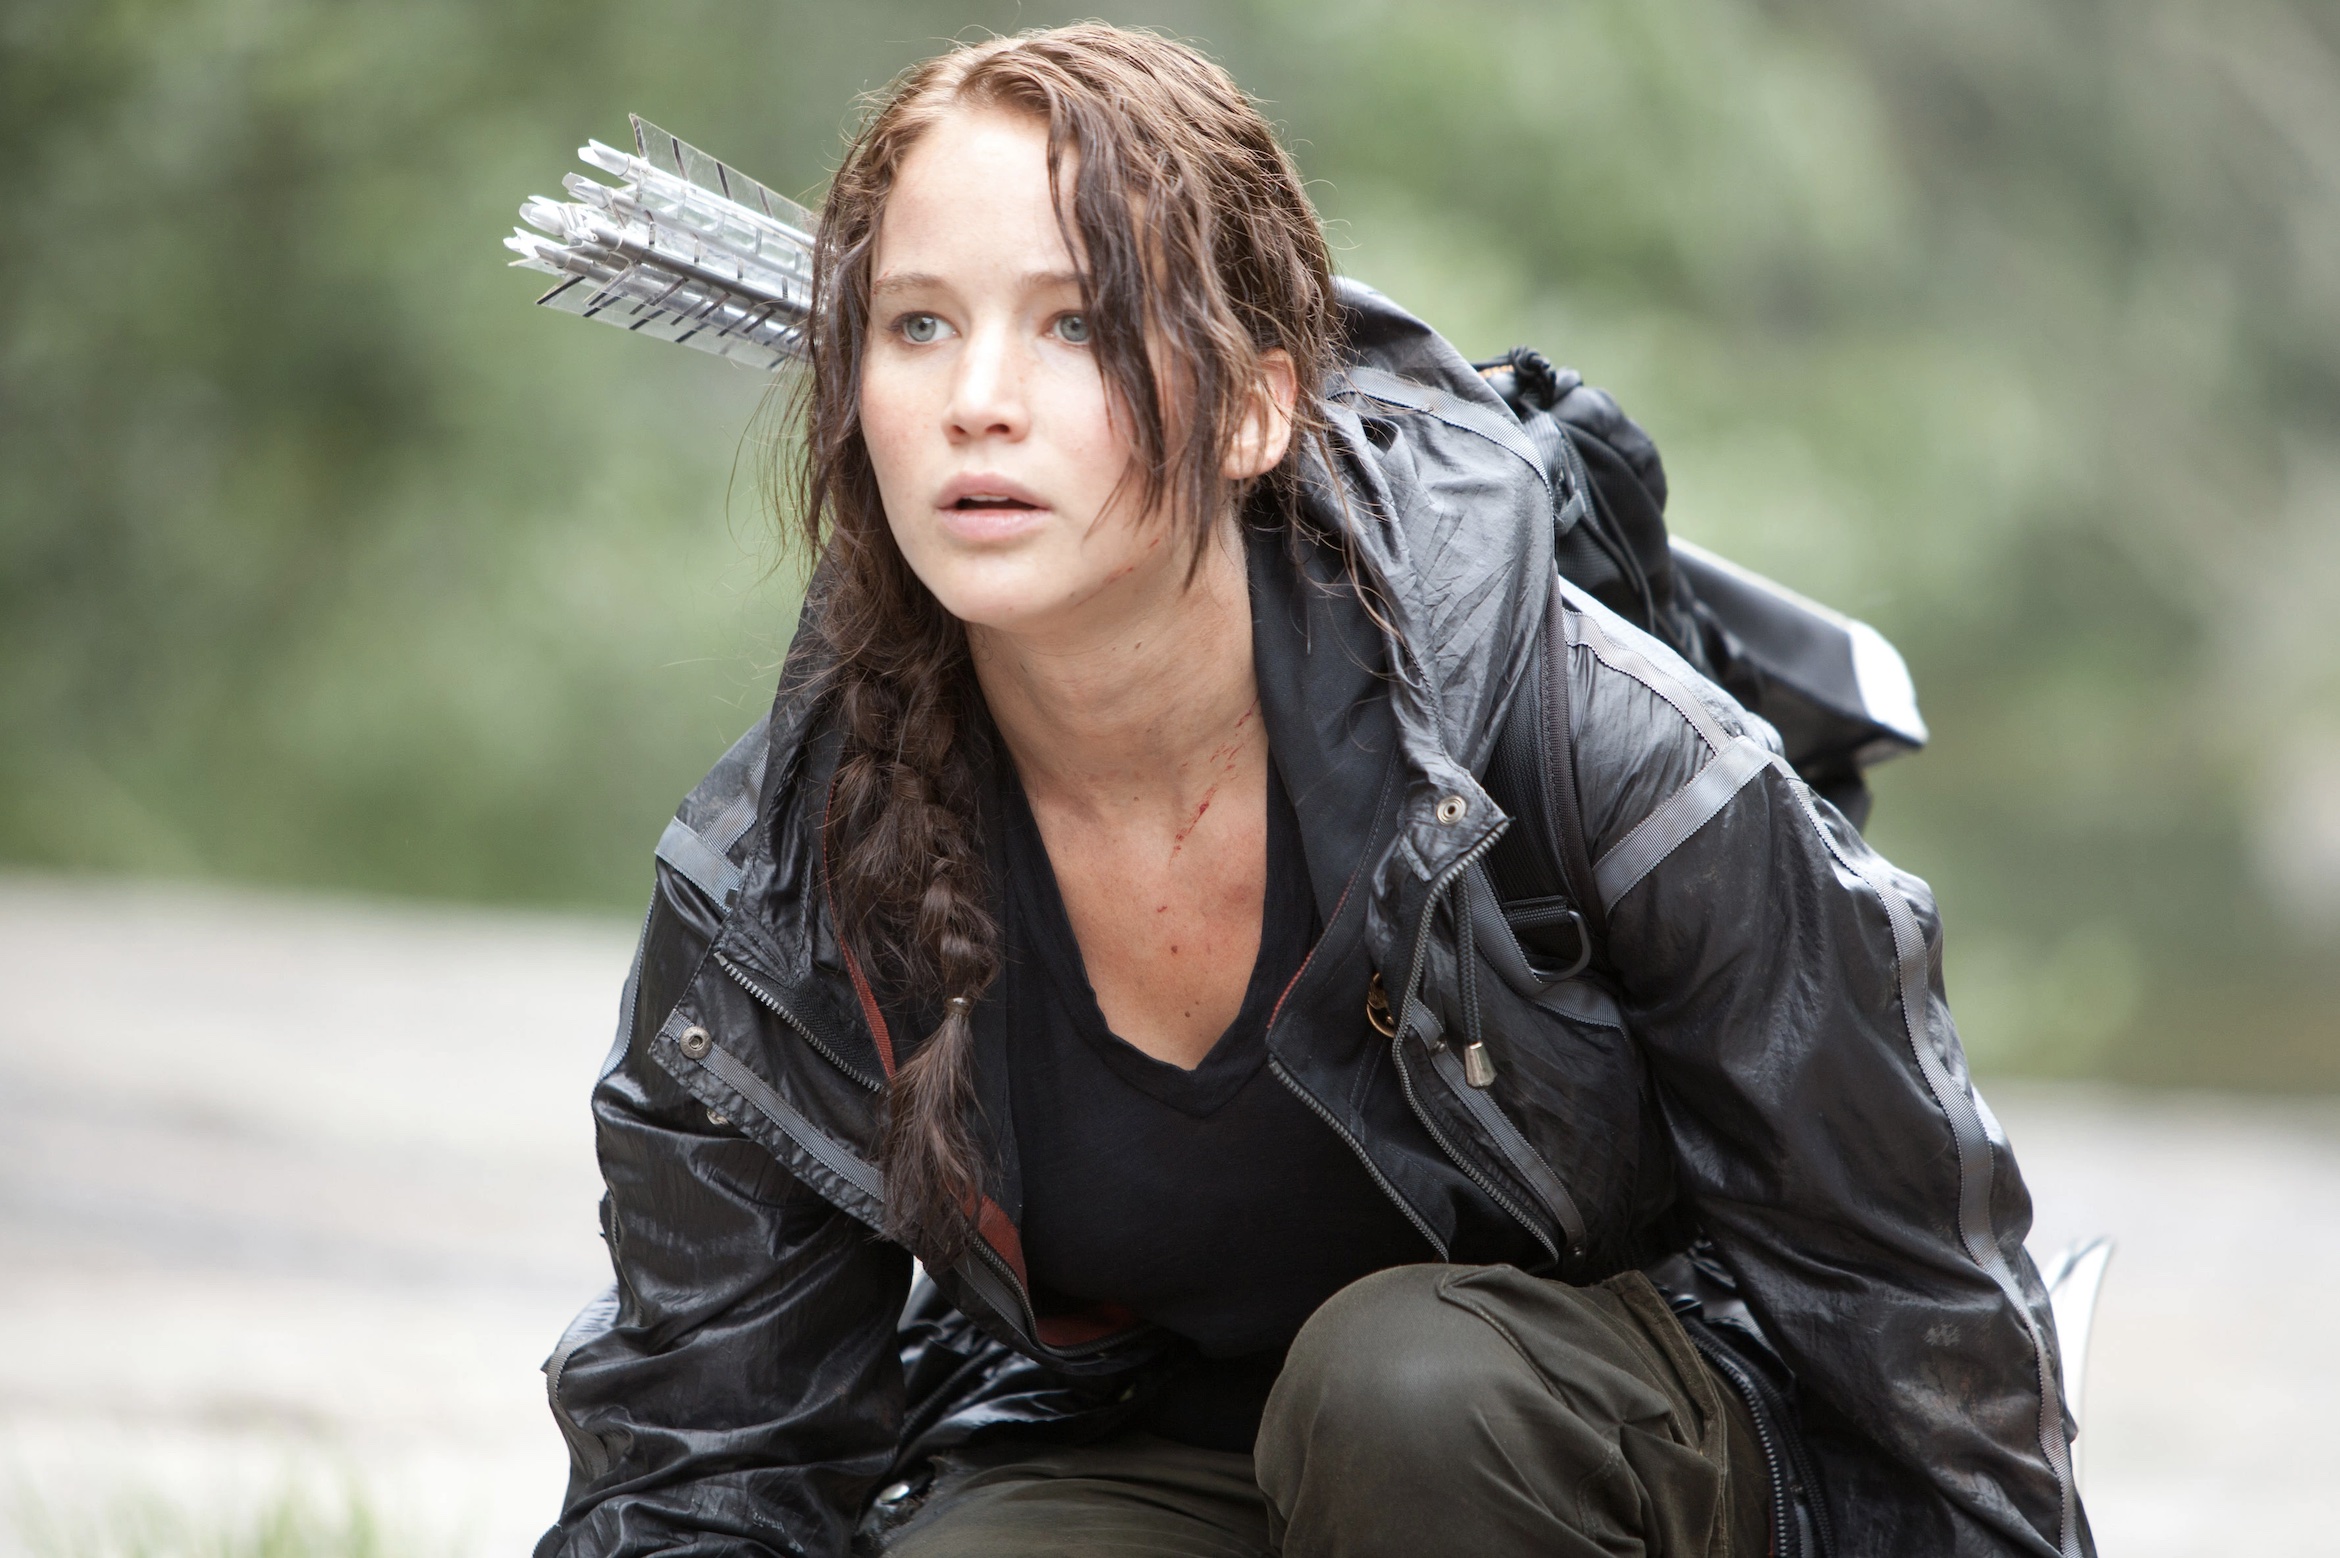 The Hunger Games on Netflix - Jennifer Lawrence as Katniss Everdeen